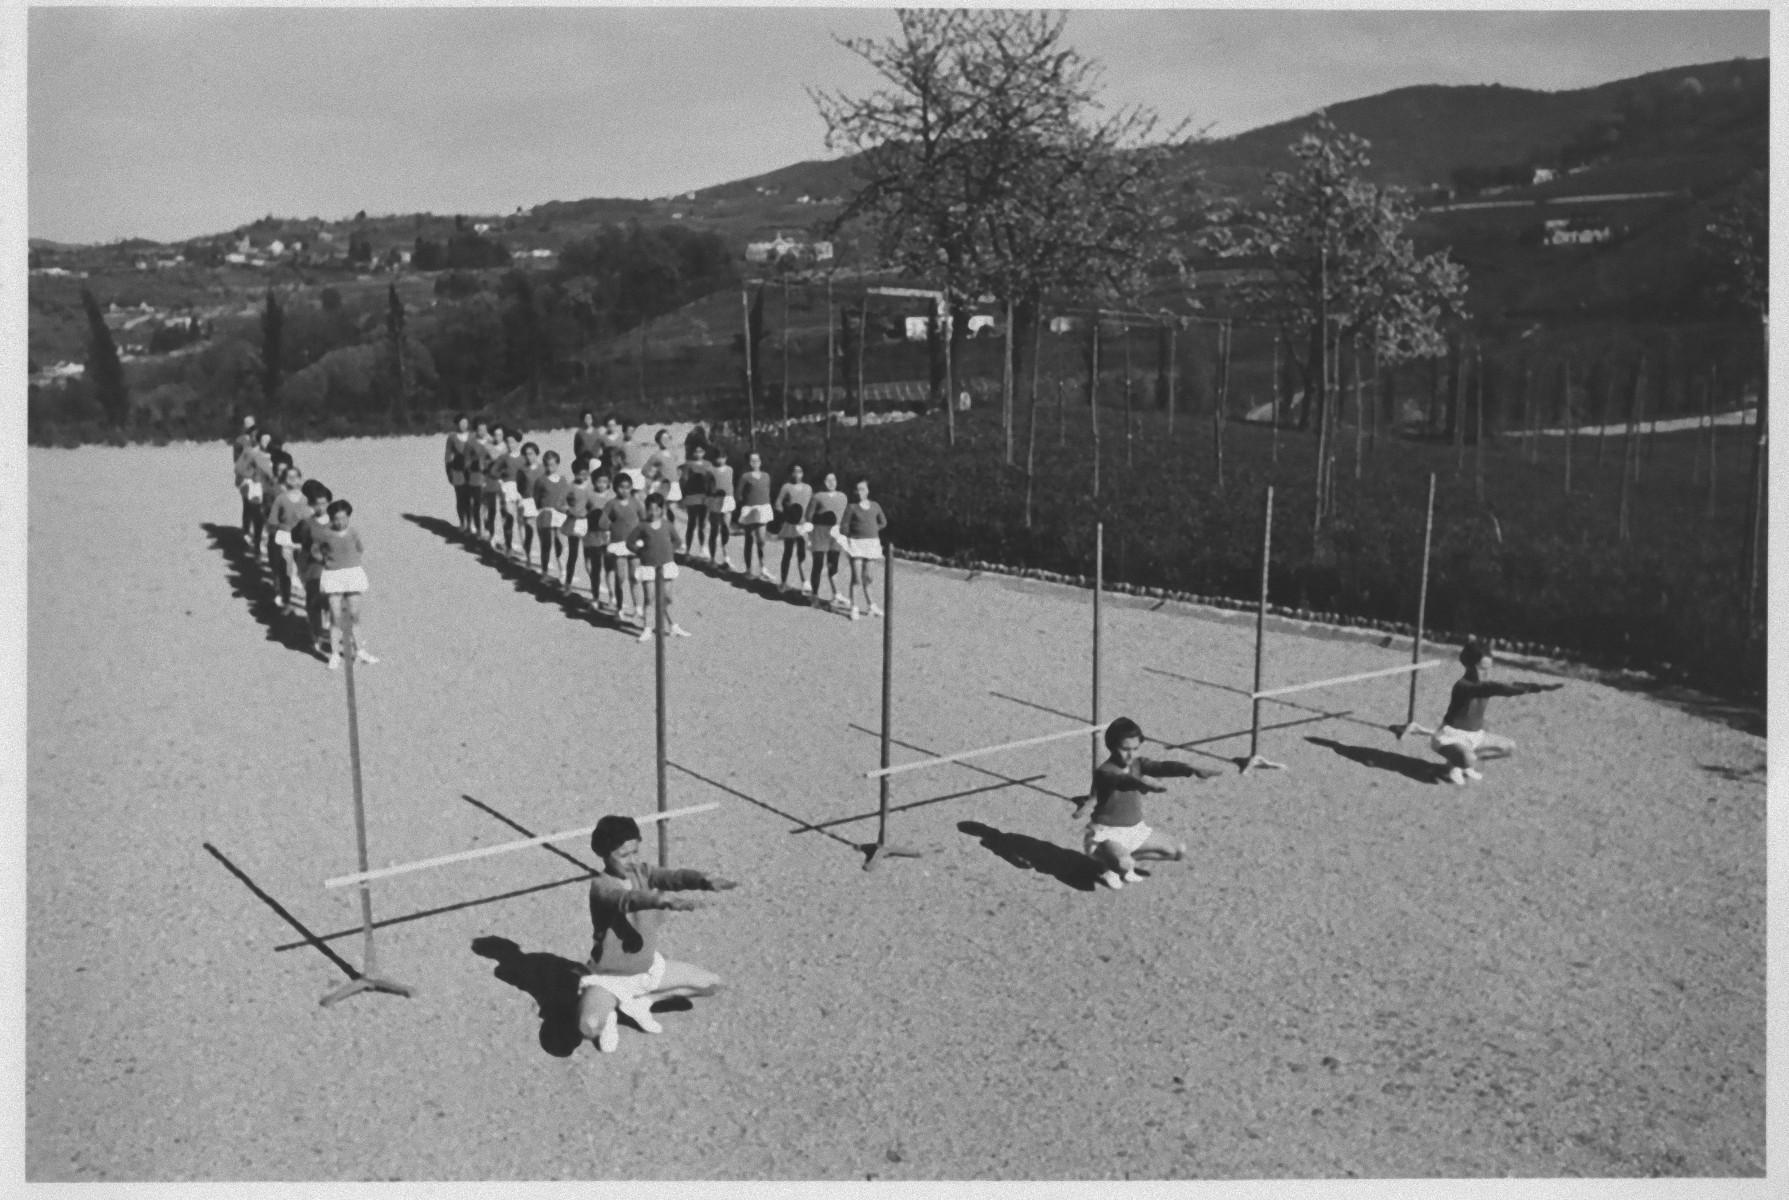 Éducation physique en extérieur pendant le Fascisme en Italie - Photo b/w - 1930 c.a.